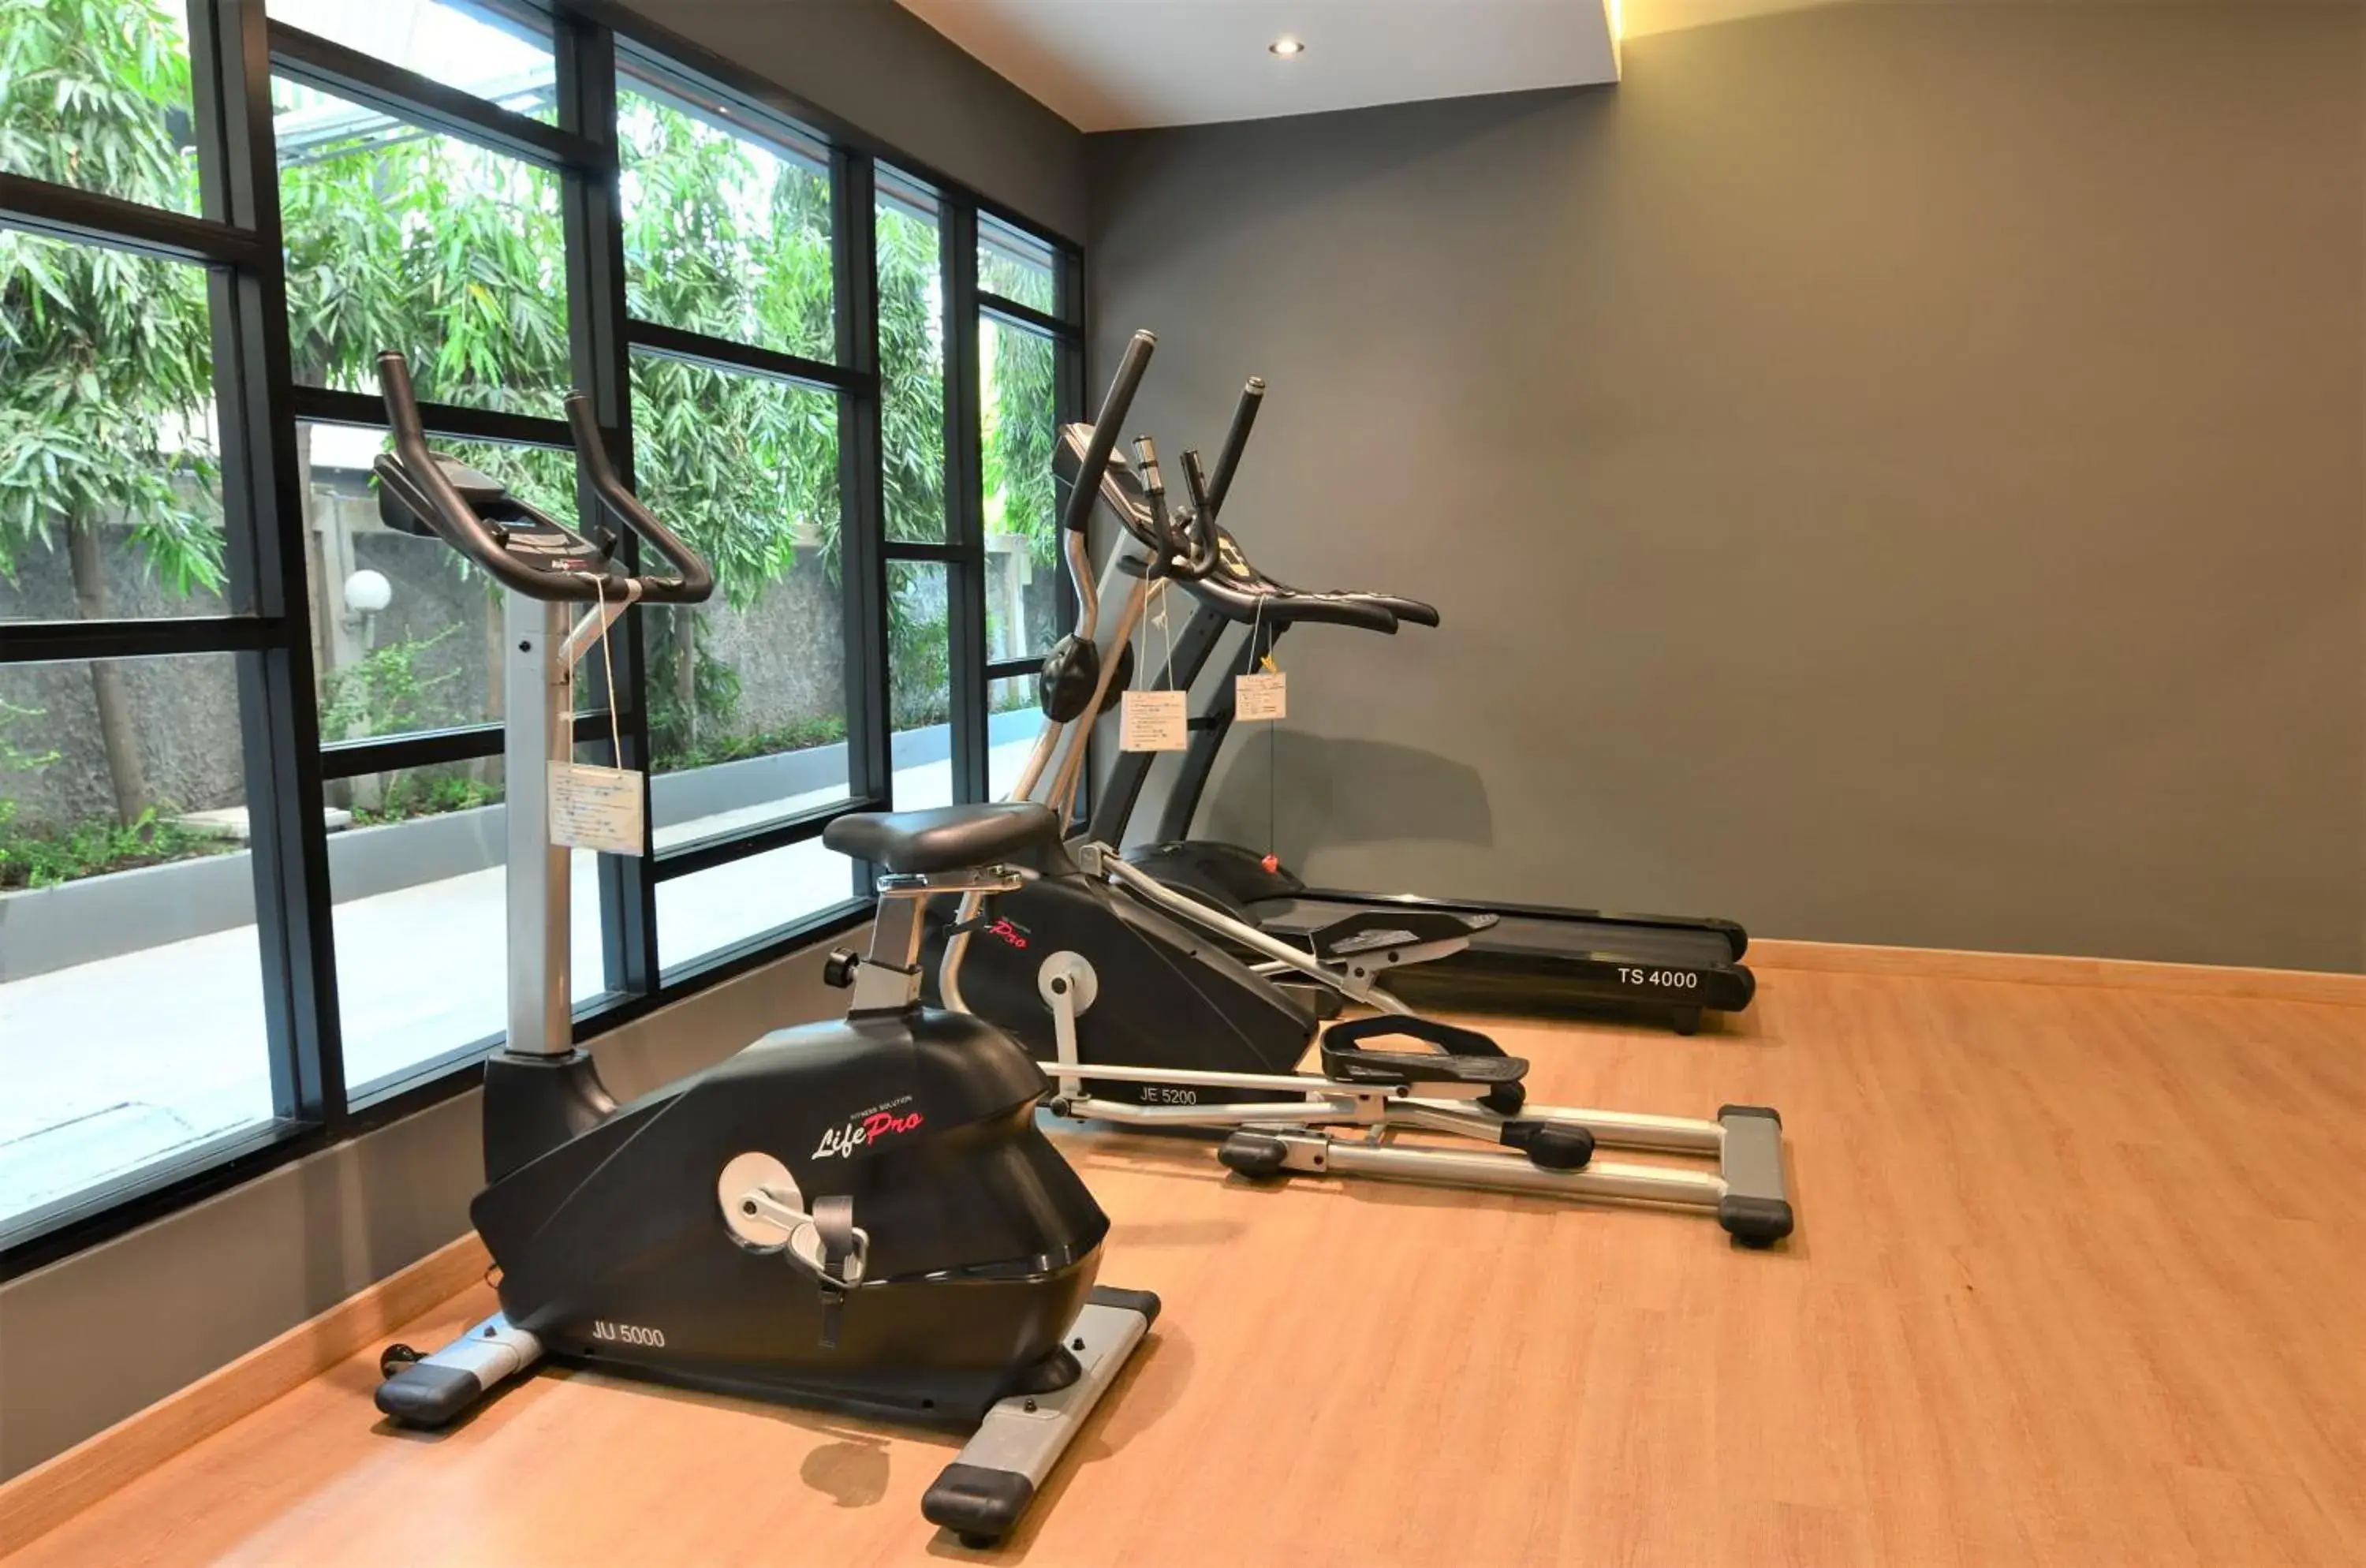 Fitness centre/facilities, Fitness Center/Facilities in Tara Garden Hotel